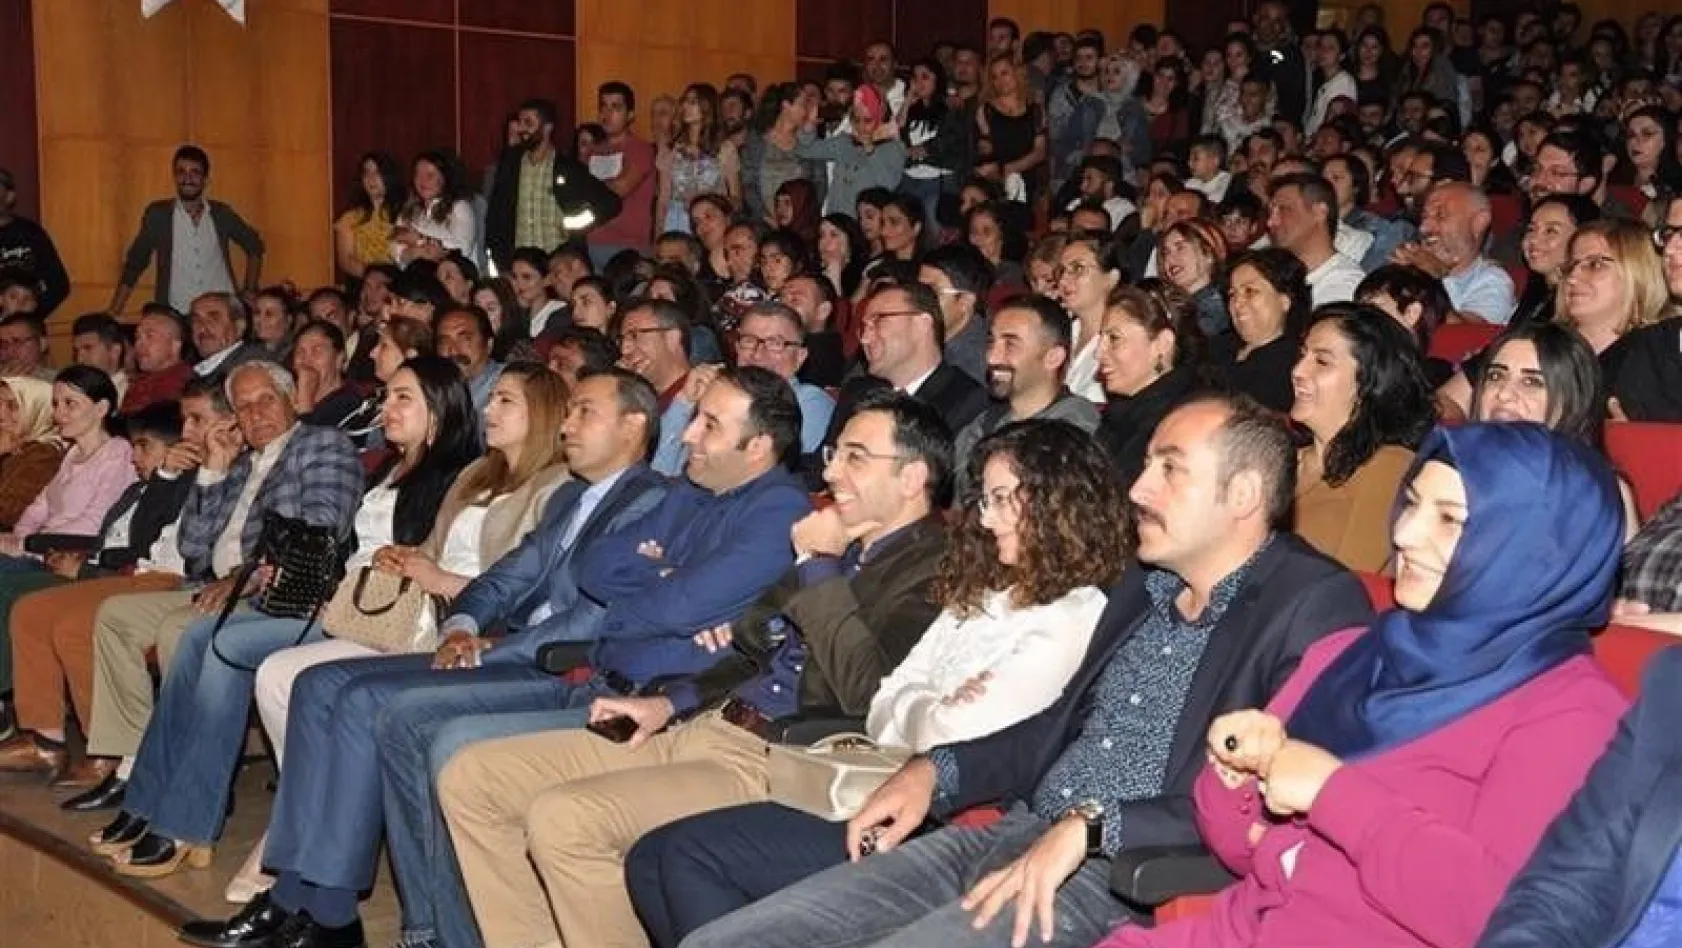 Tunceli'de 'Kocamın Nişanlısı' tiyatro oyunu sahnelendi
